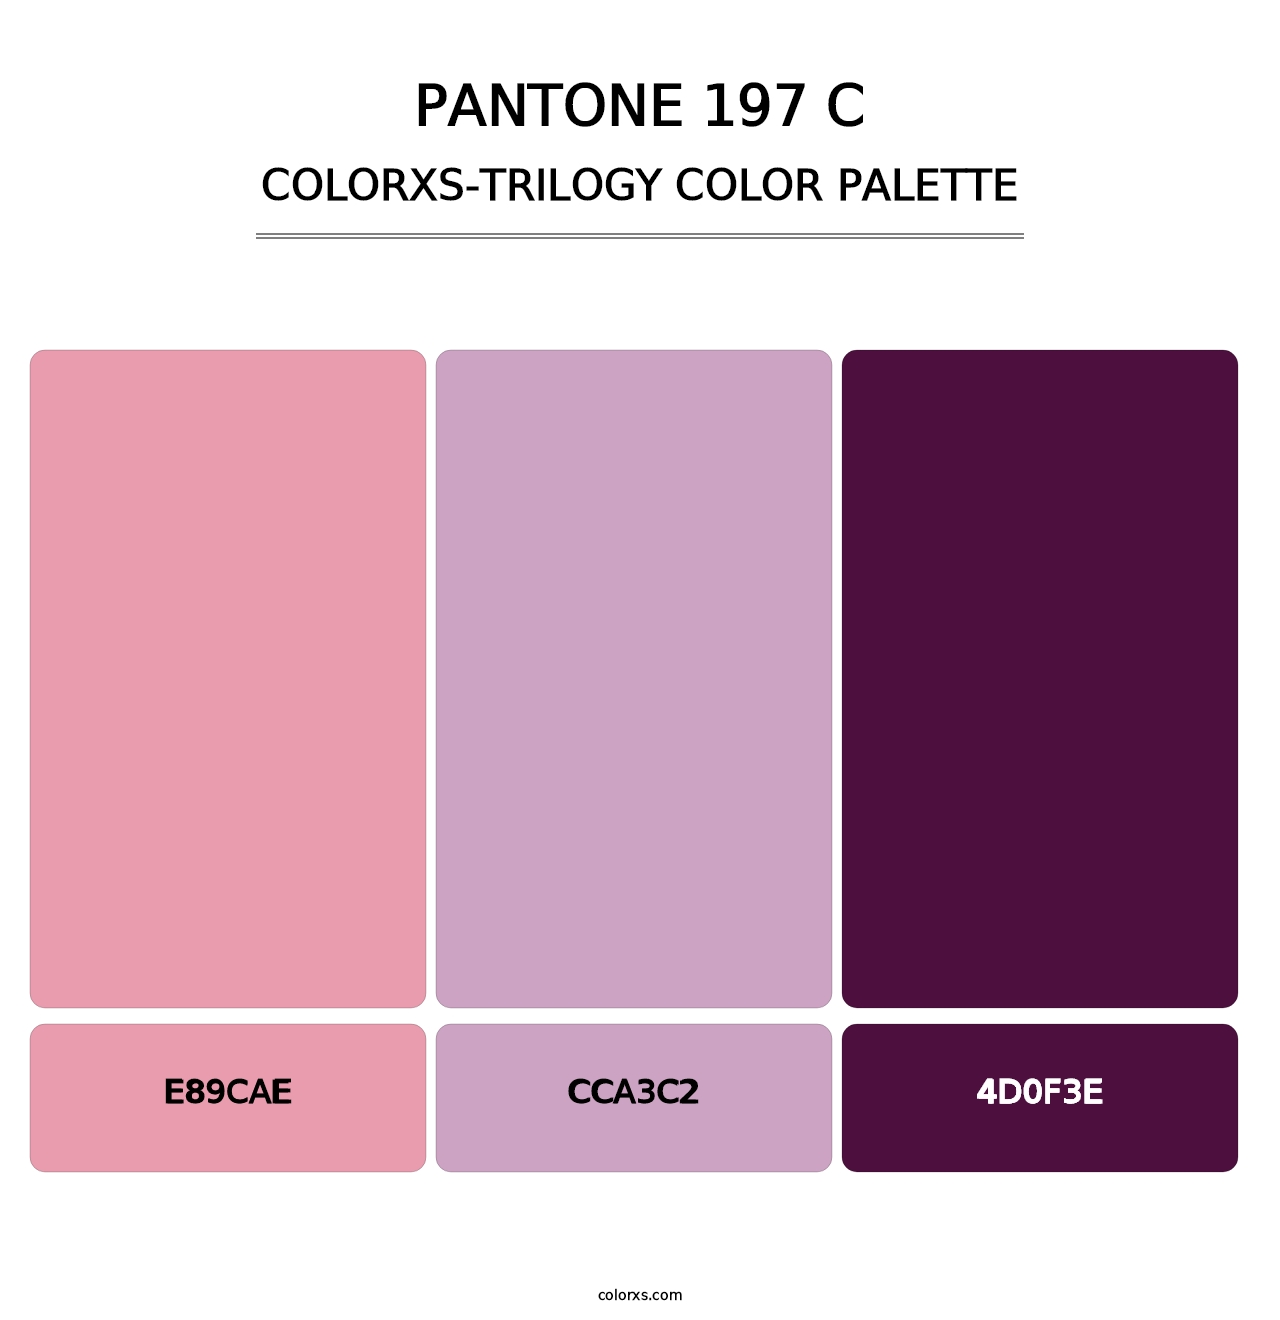 PANTONE 197 C - Colorxs Trilogy Palette